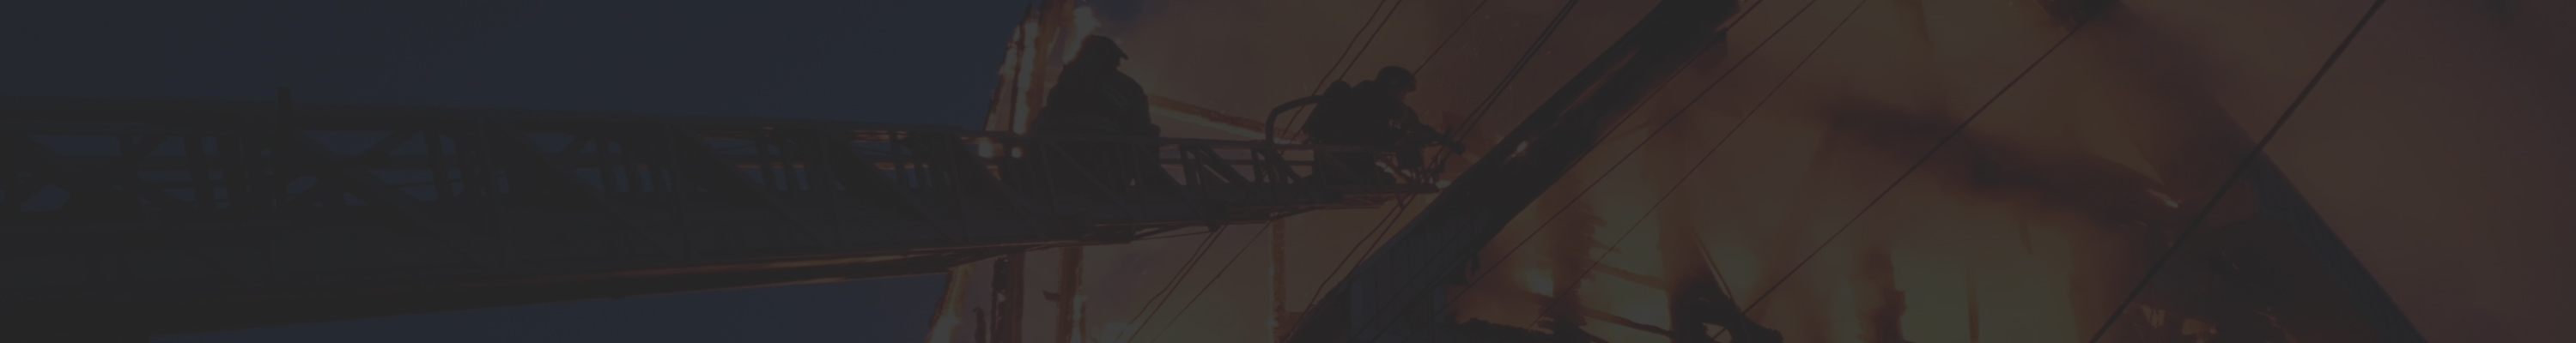 Public Adjusters Associates - Commercial Fire Damage Image 1